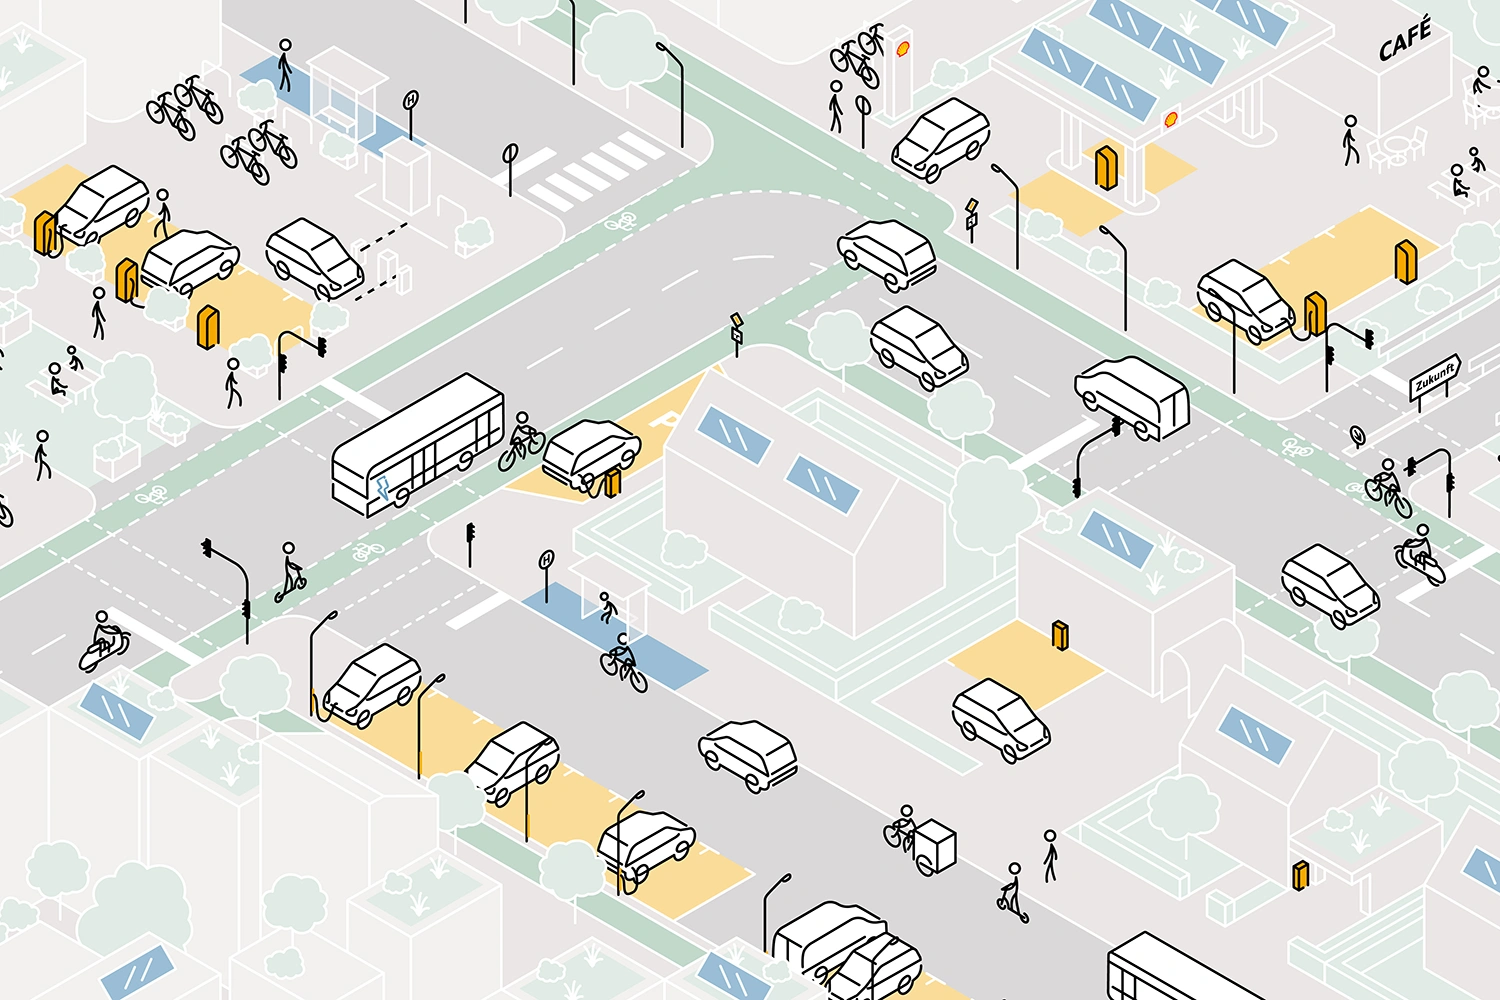 Schematische Darstellung des öffentlichen Raums in einer Stadt im Jahr 2030 mit einem flächendeckenden Netz aus öffentlichen Ladestationen.